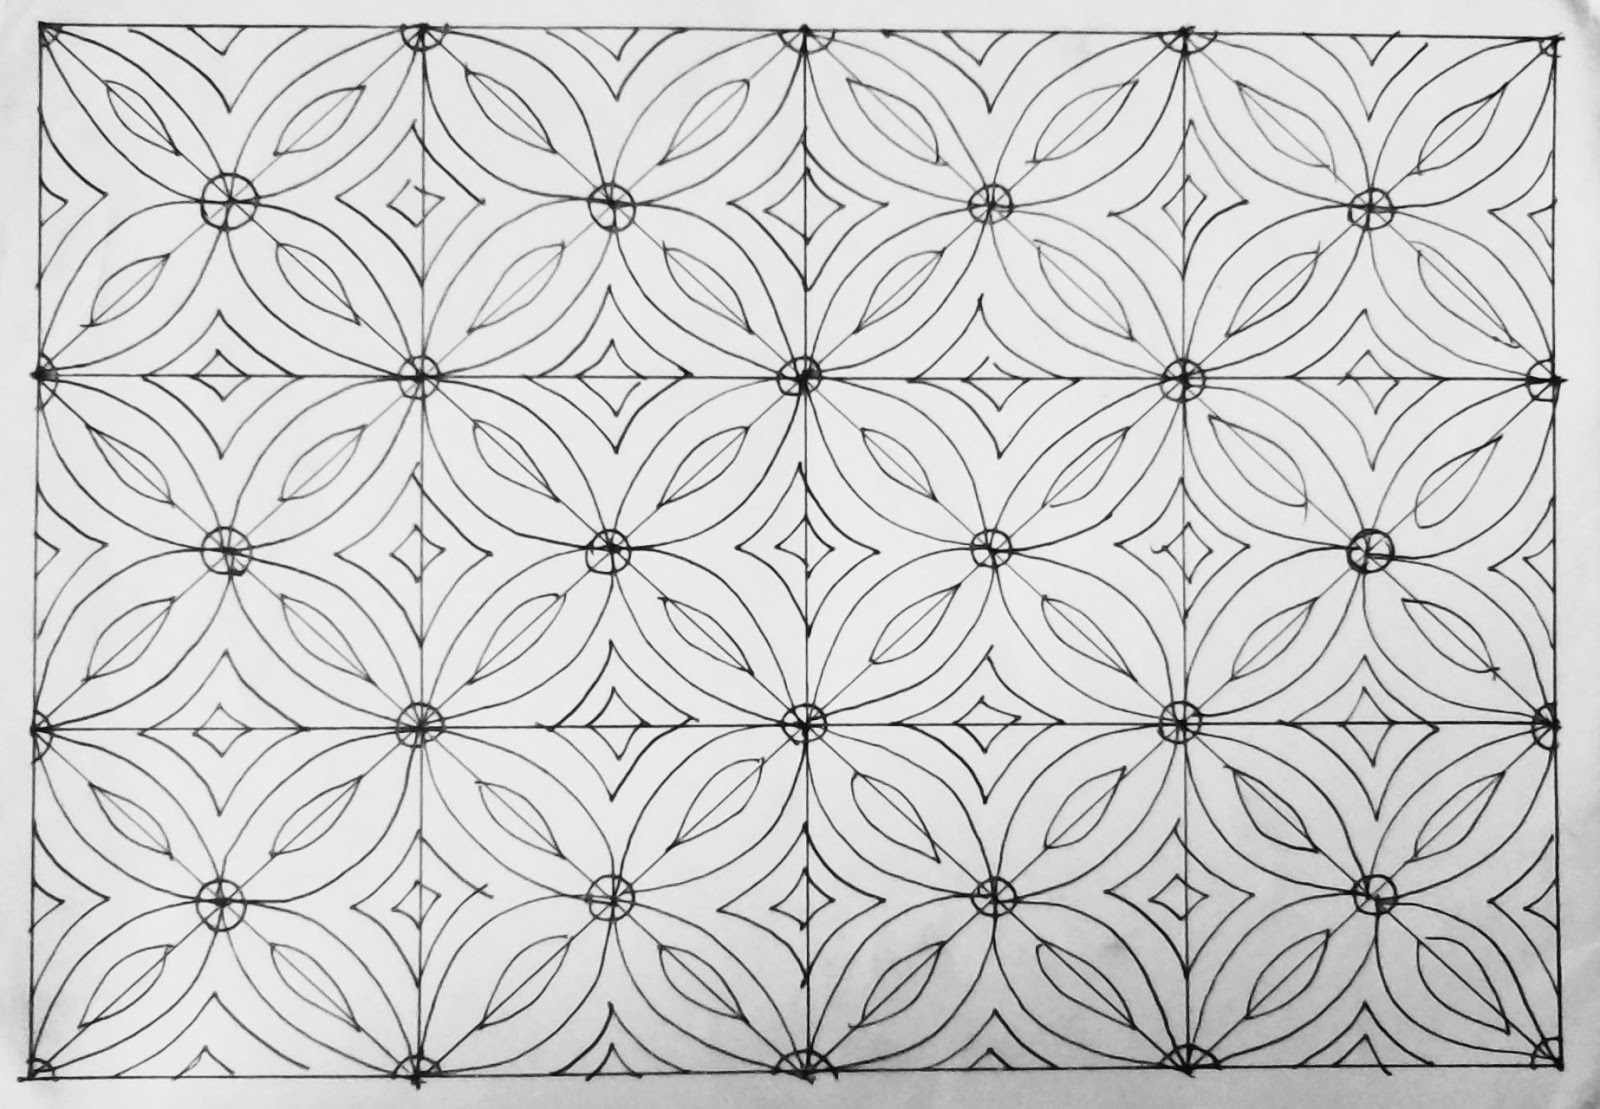 Unduh 100 Gambar Batik Geometris Yang Mudah Digambar Terbaik Gratis